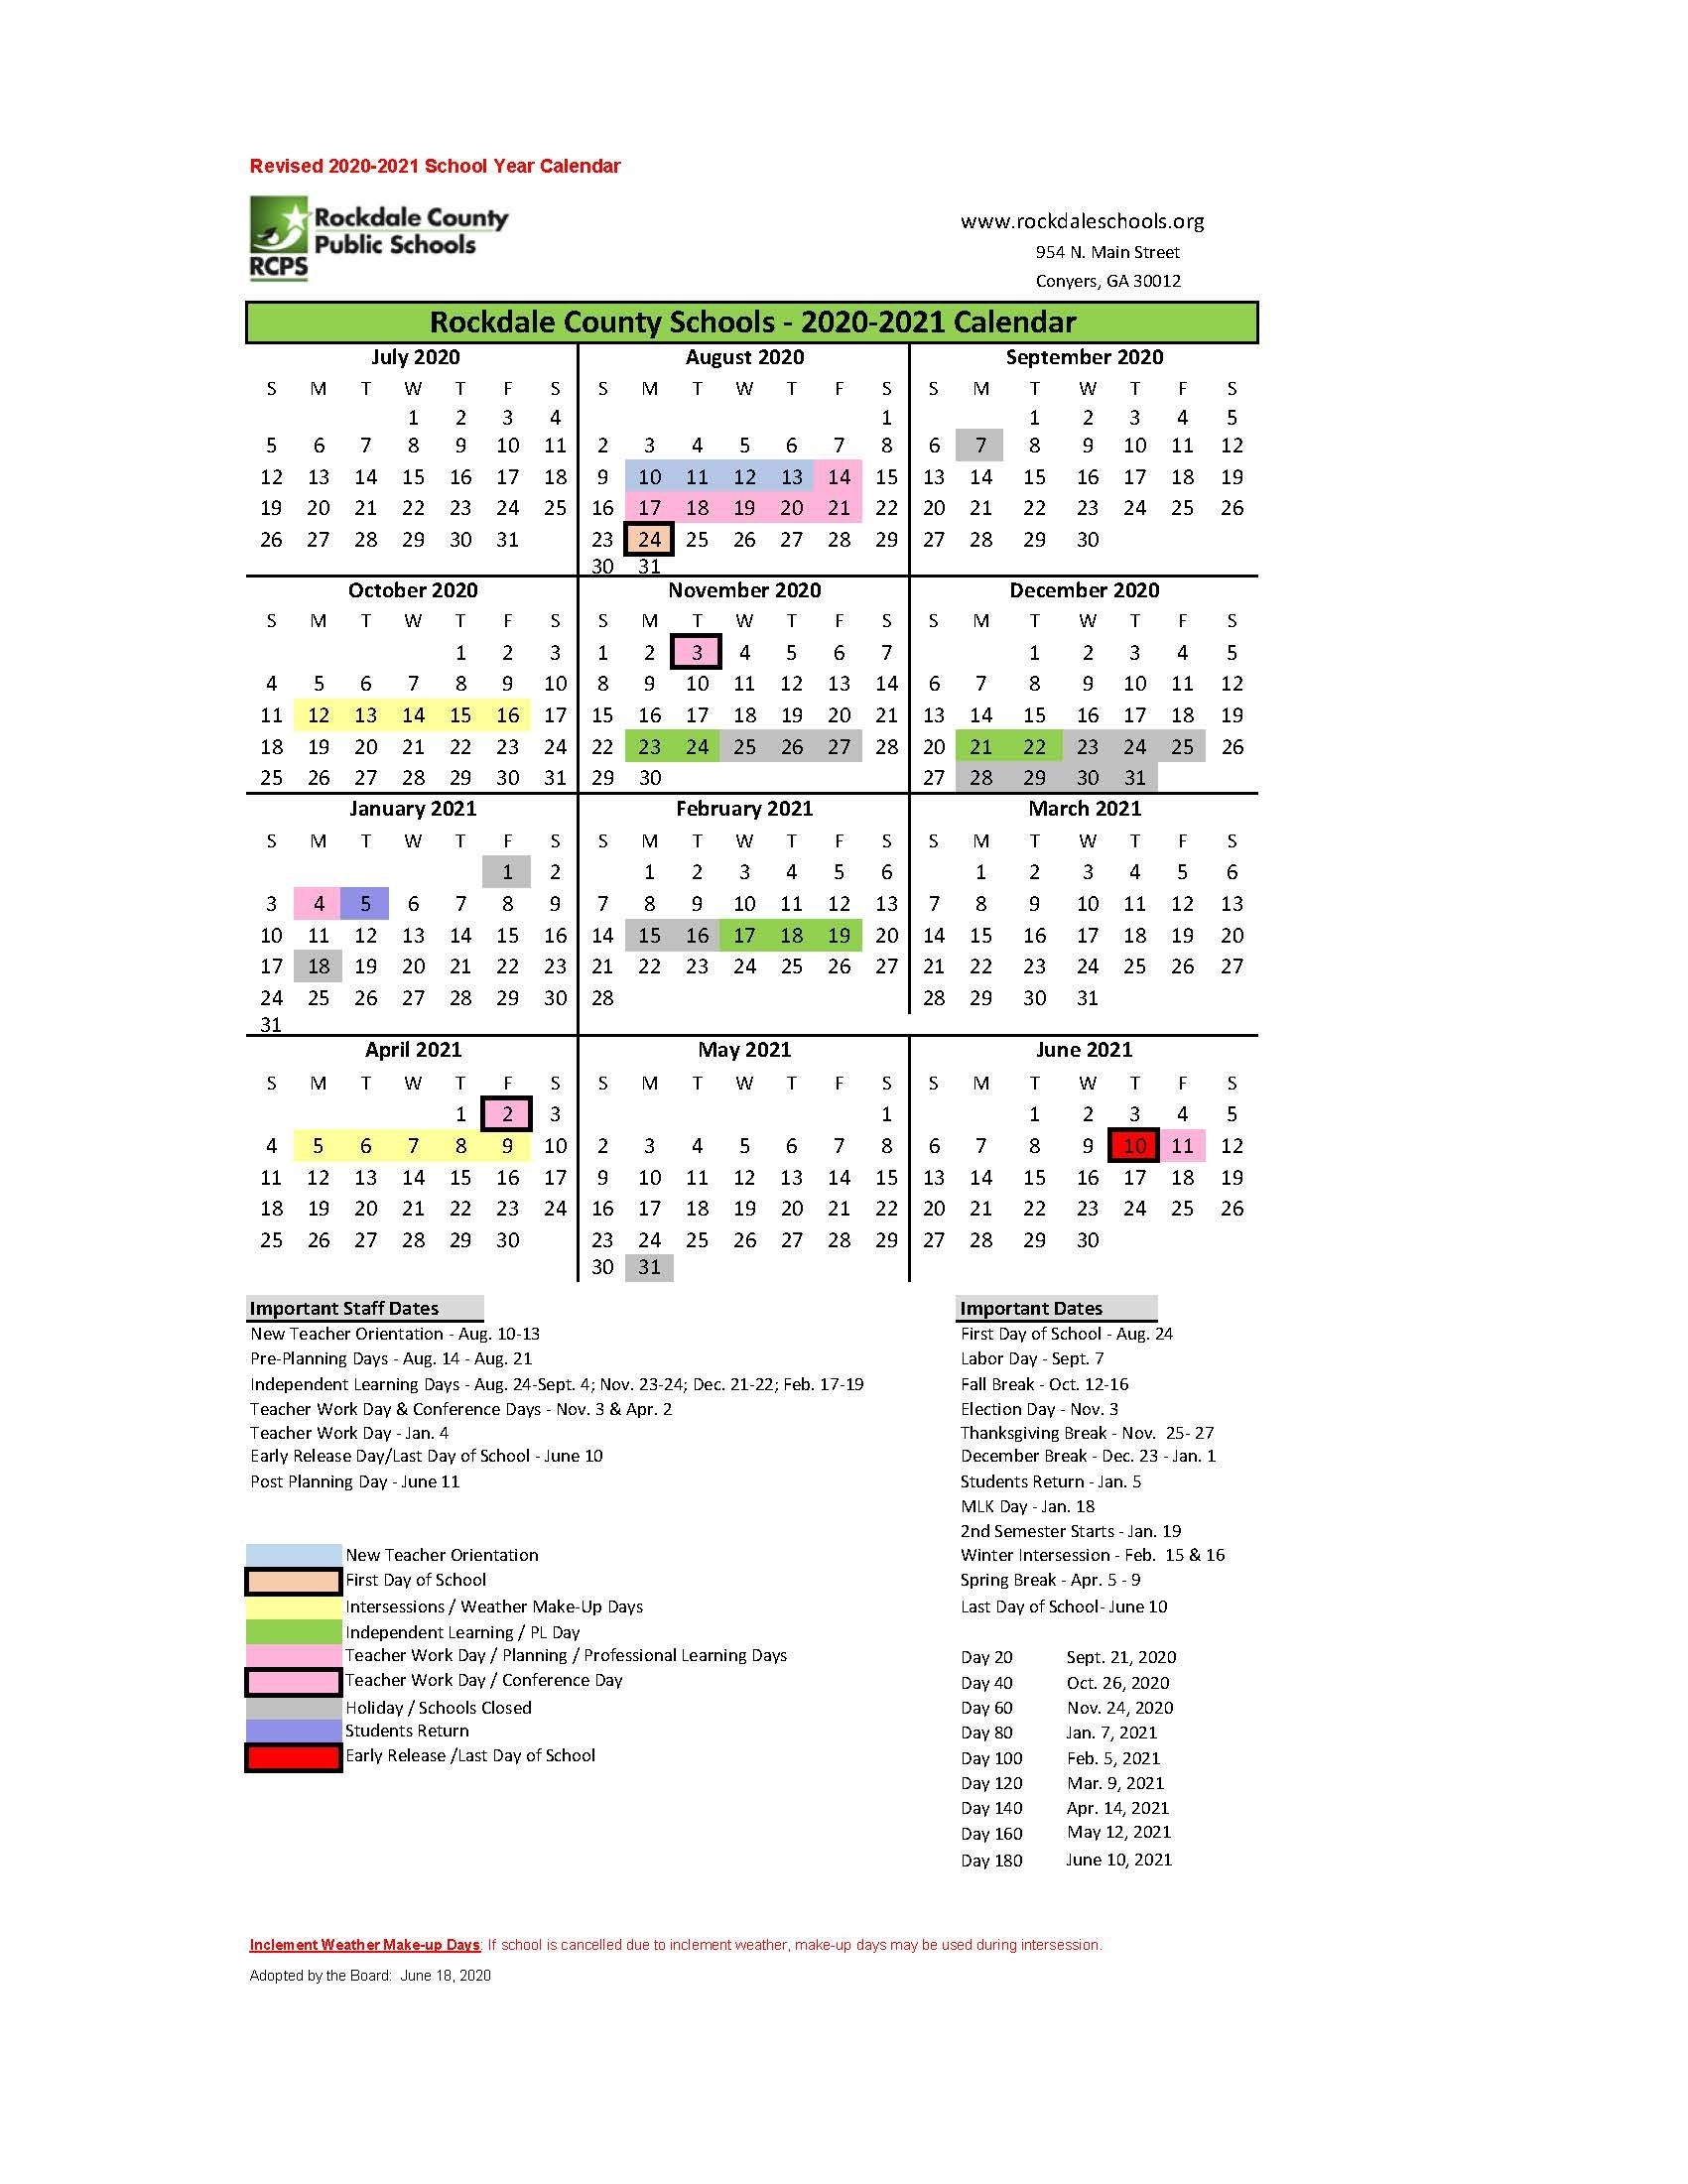 Calendars - Rockdale County Public Schools